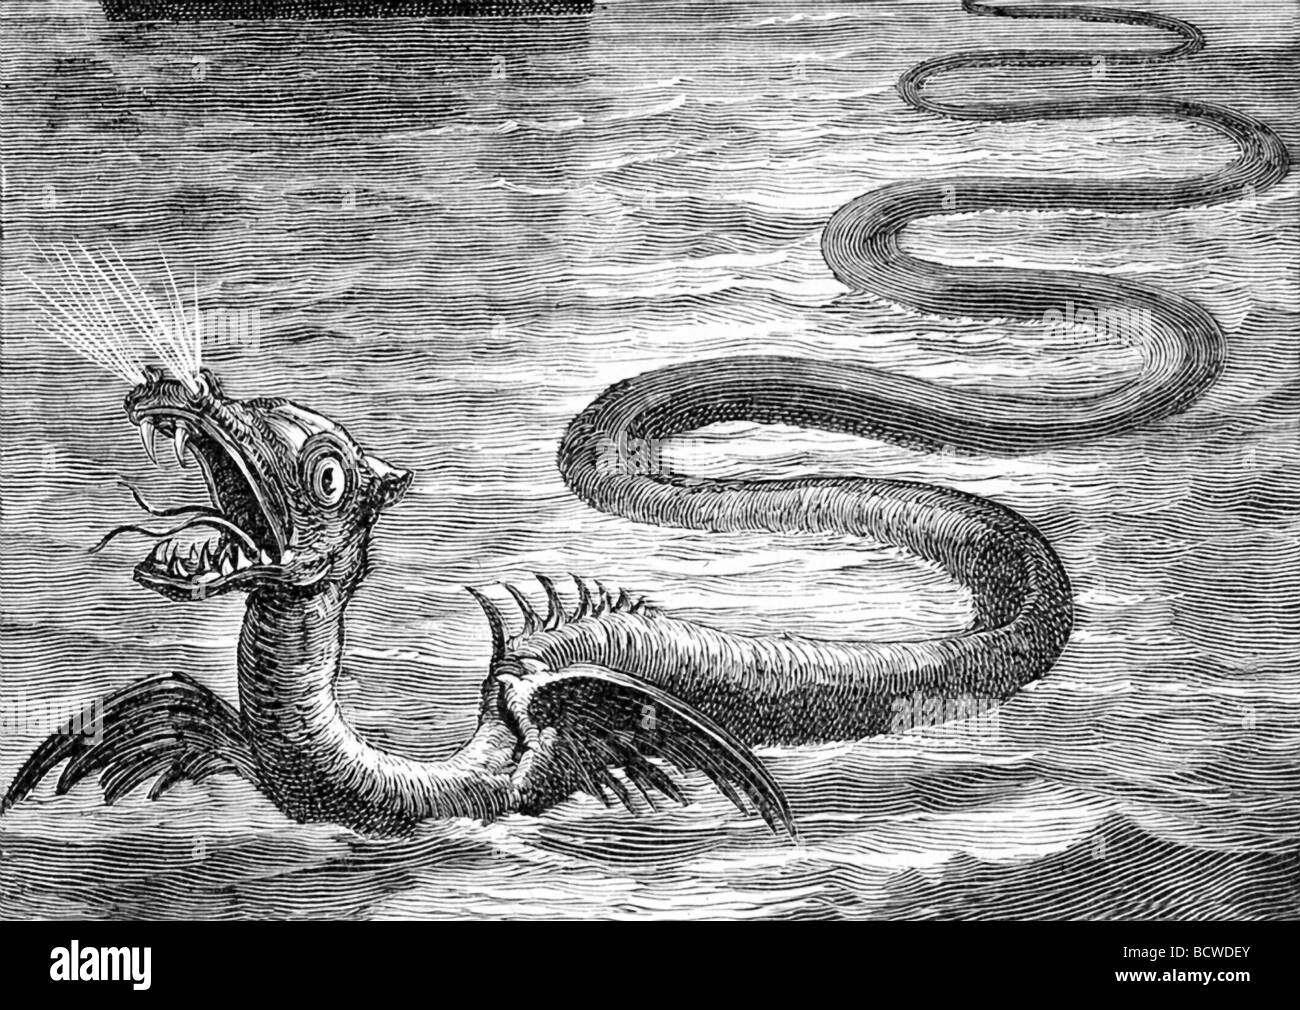 Diese Abbildung stammt aus 1891 und ist eine phantasievolle Darstellung einer Seeschlange. Stockfoto